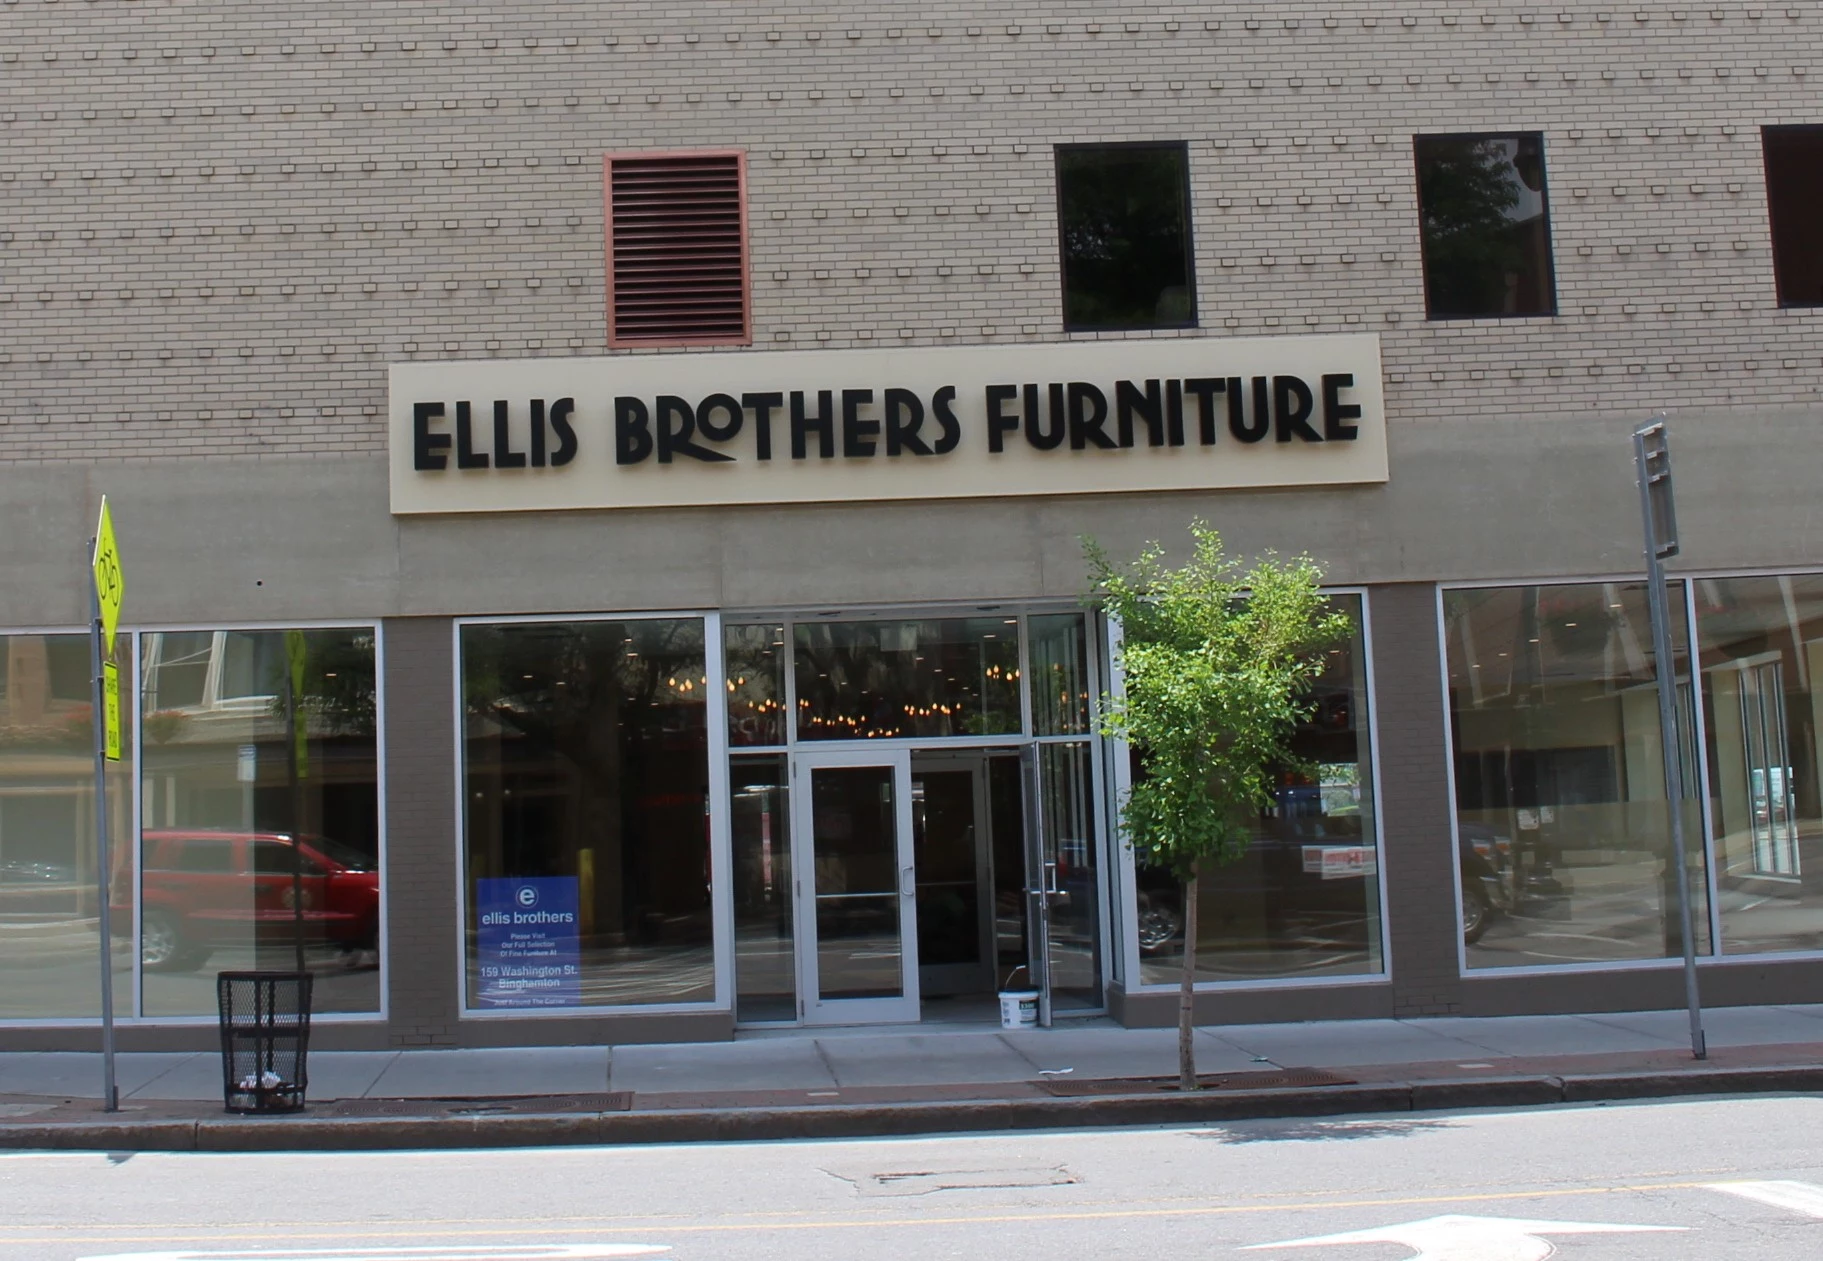 Sneak Peek First Look Inside New Ellis Brothers Store